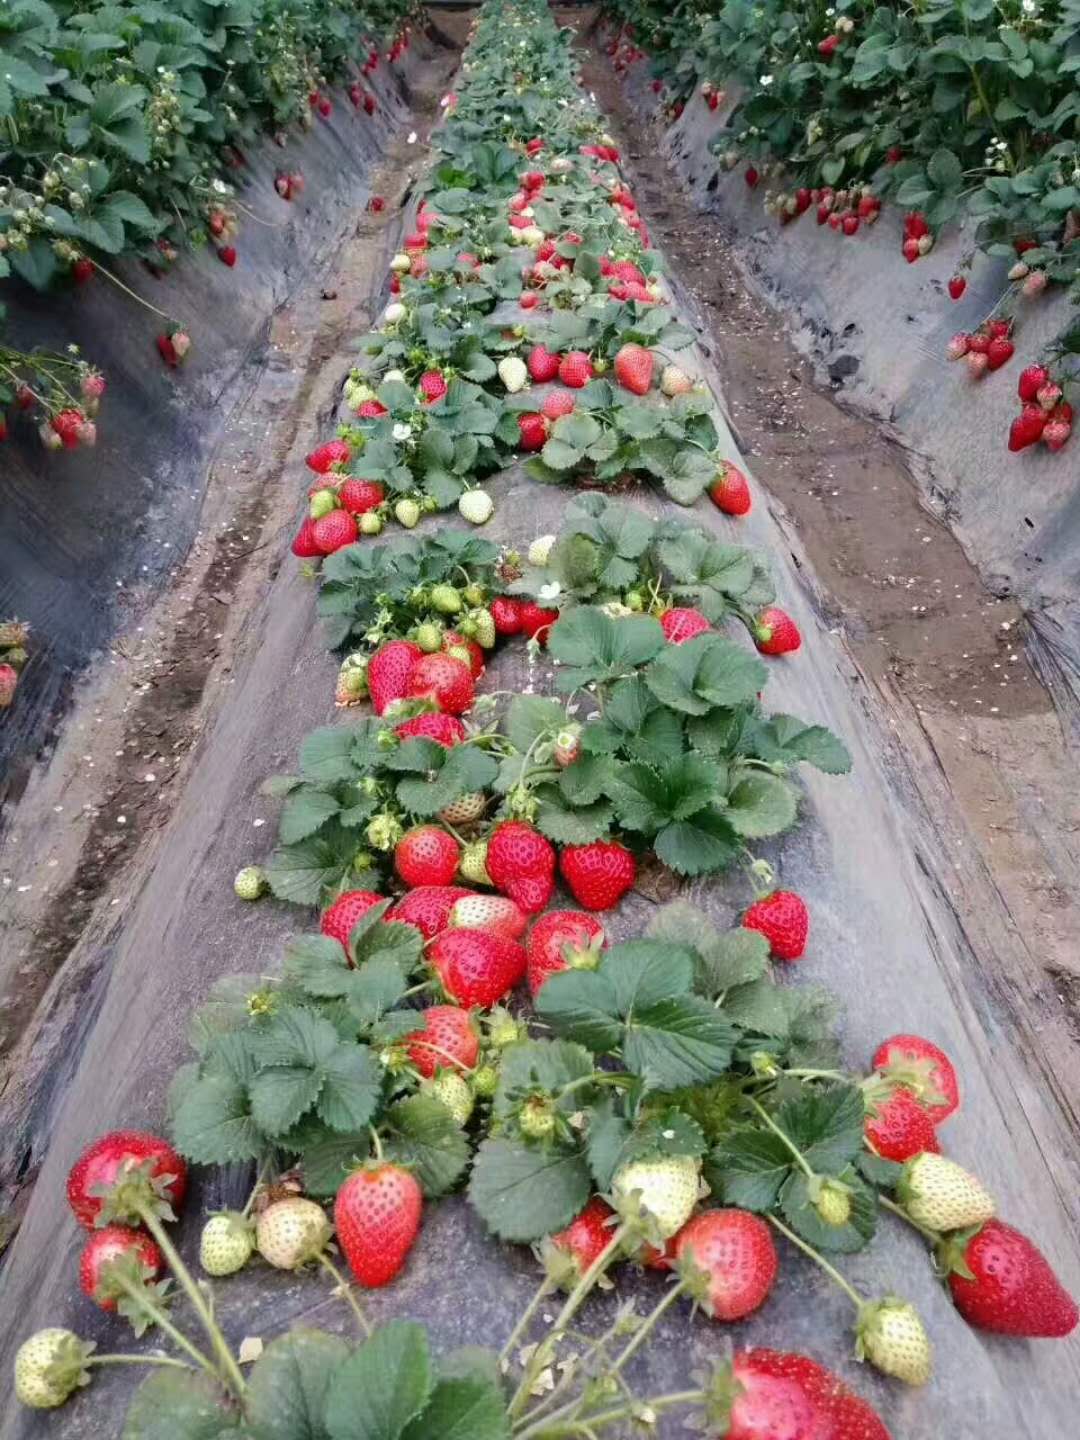 法兰地草莓苗-- 泰安市泰林农业科技有限公司